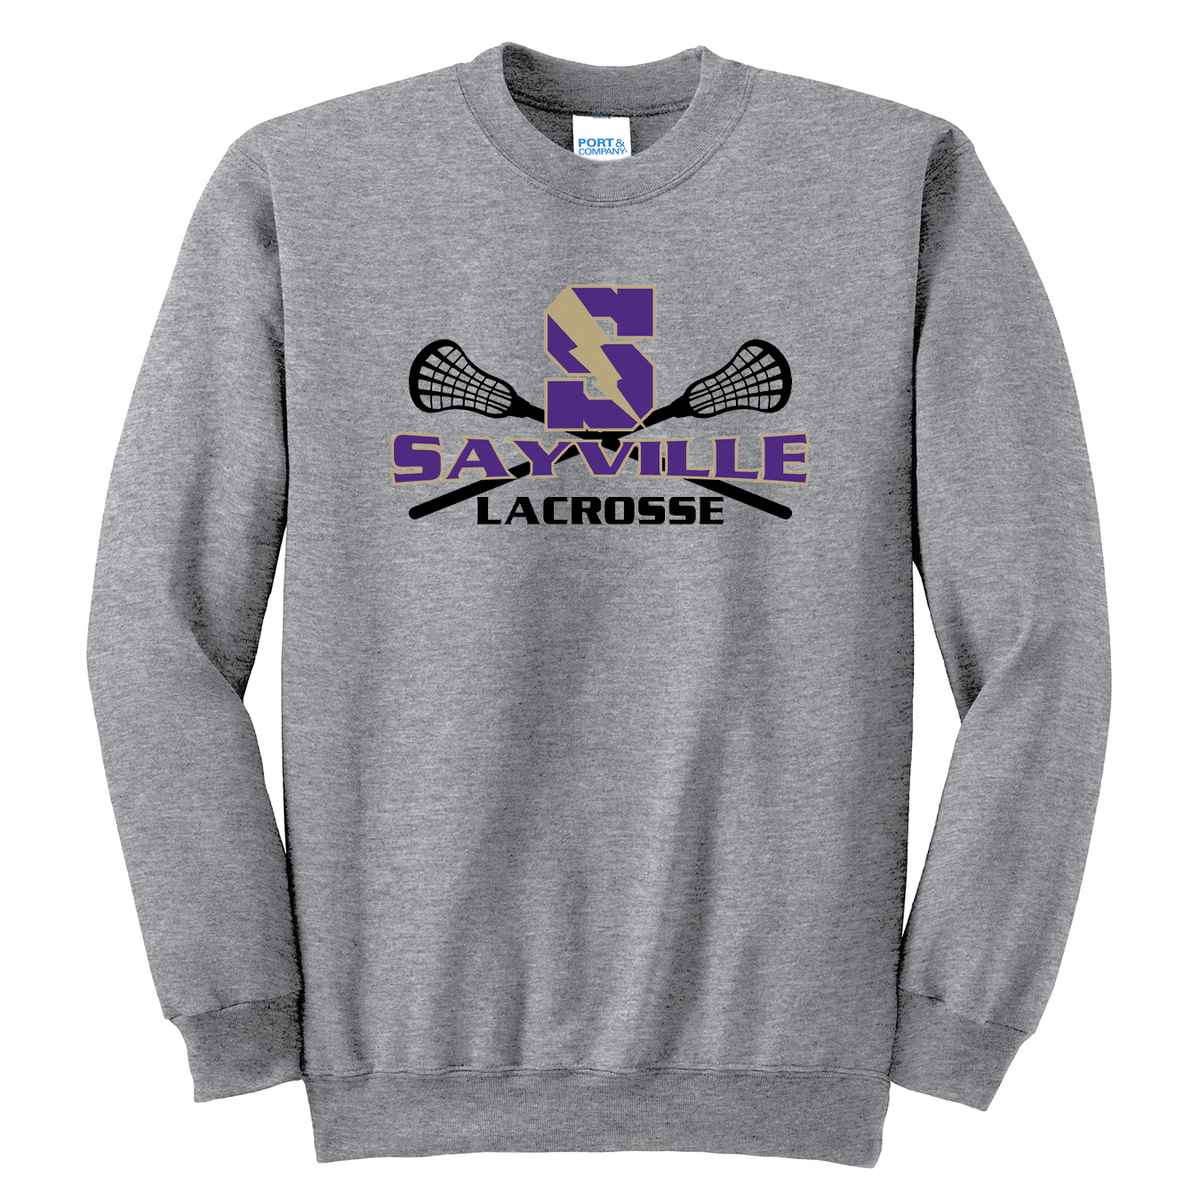 Sayville Lacrosse Crew Neck Sweater